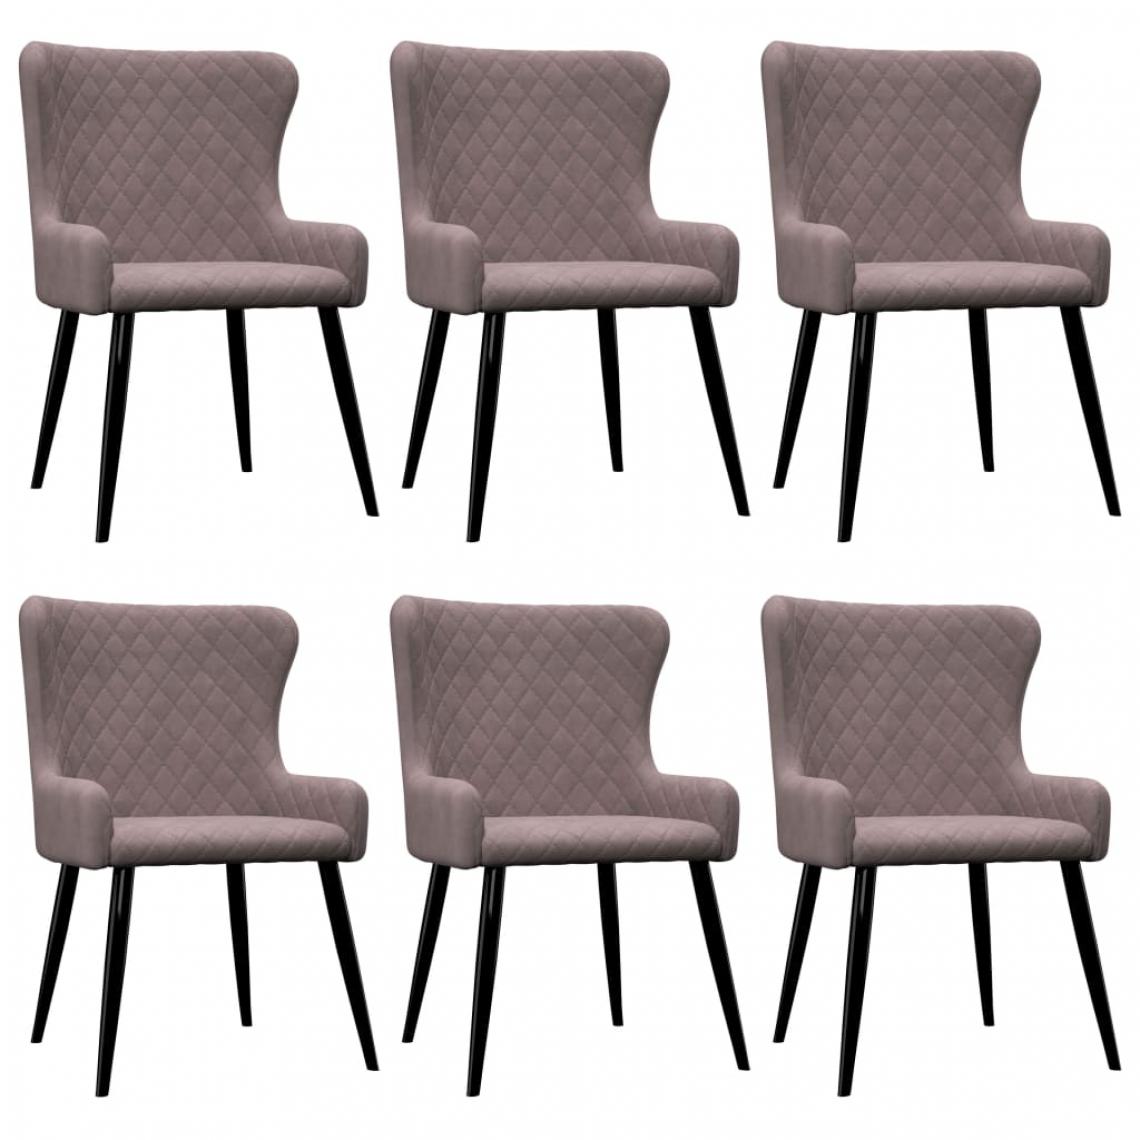 Icaverne - Superbe Fauteuils et chaises selection Kingstown Chaises de salle à manger 6 pcs Rose Velours - Chaises